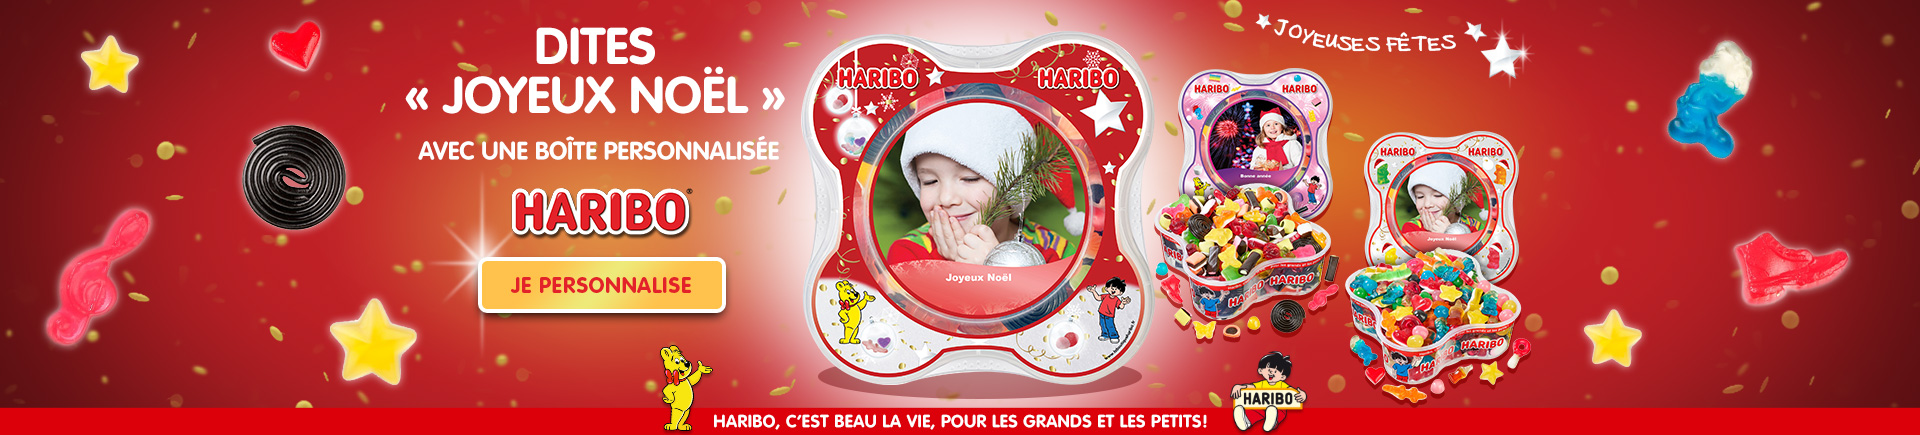 ALERTE BONBONS : Gagne ta boîte de bonbons personnalisée HARIBO